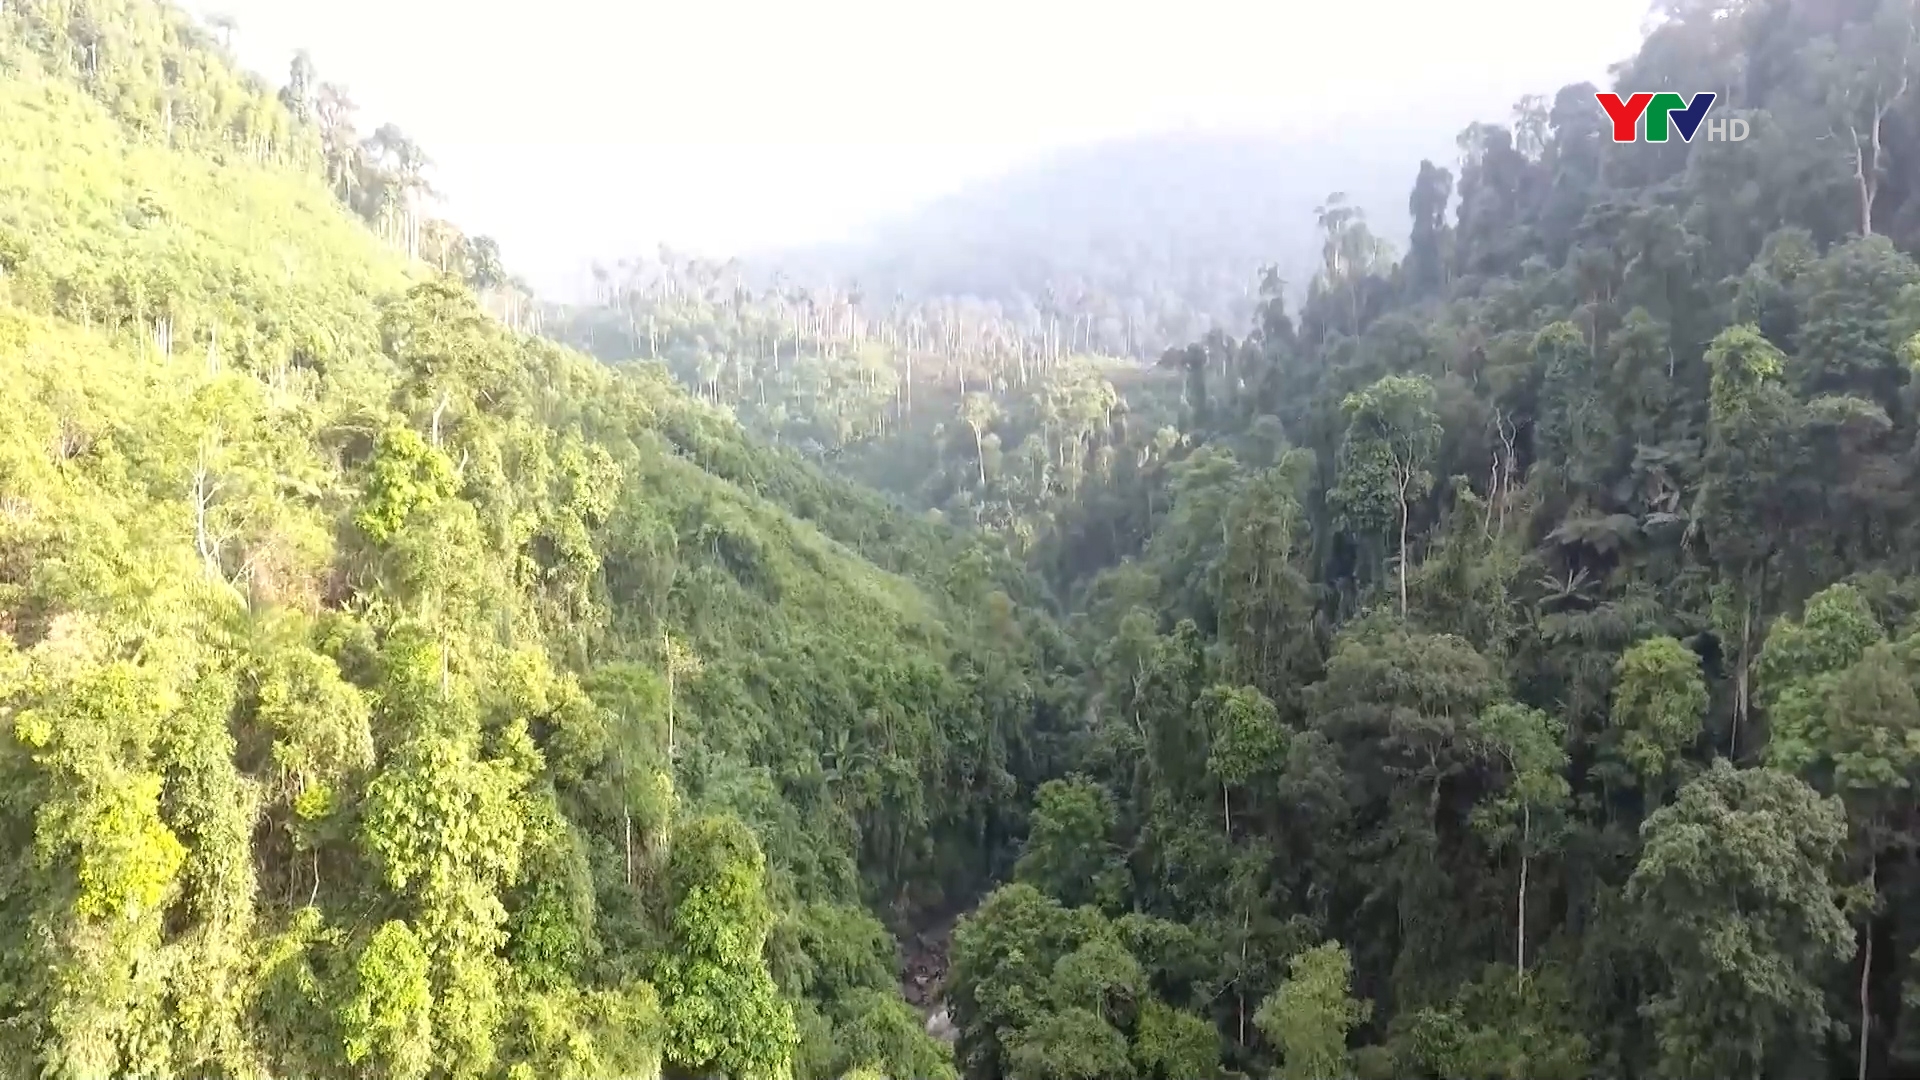 Chính sách chi trả dịch vụ môi trường rừng góp phần bảo vệ rừng bền vững ở Yên Bái